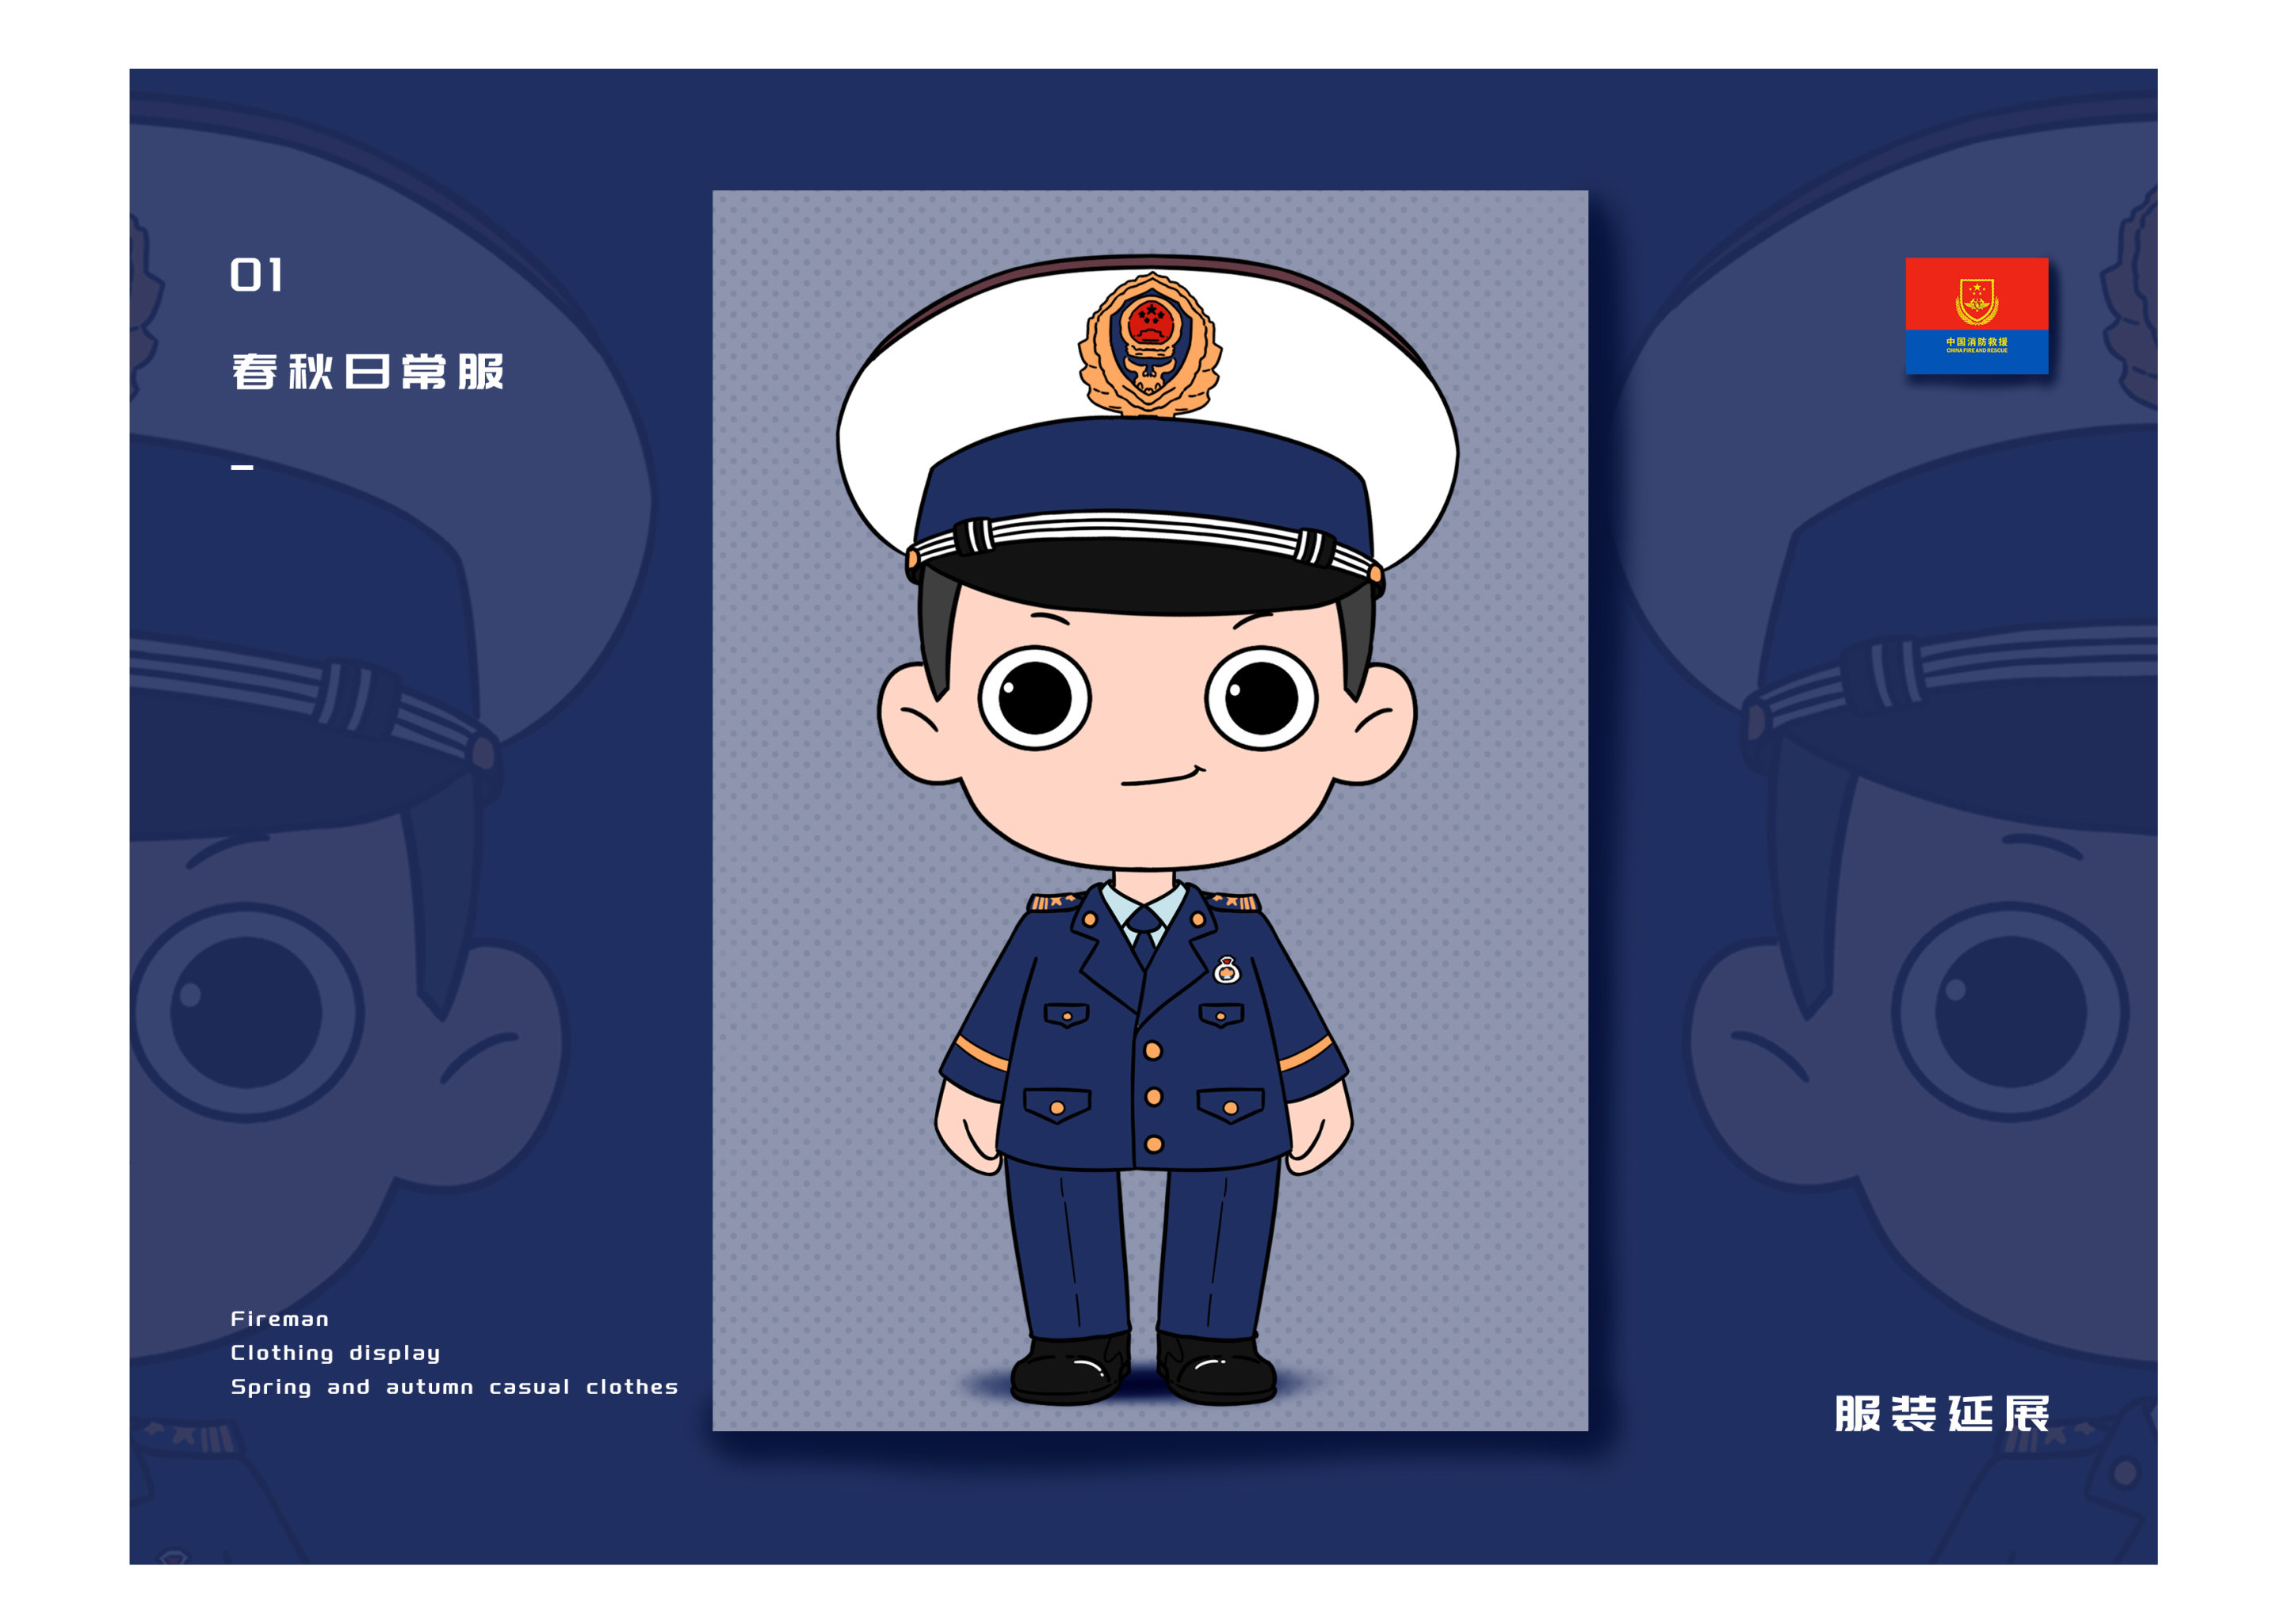 中国消防动漫形象设计"蓝朋友"